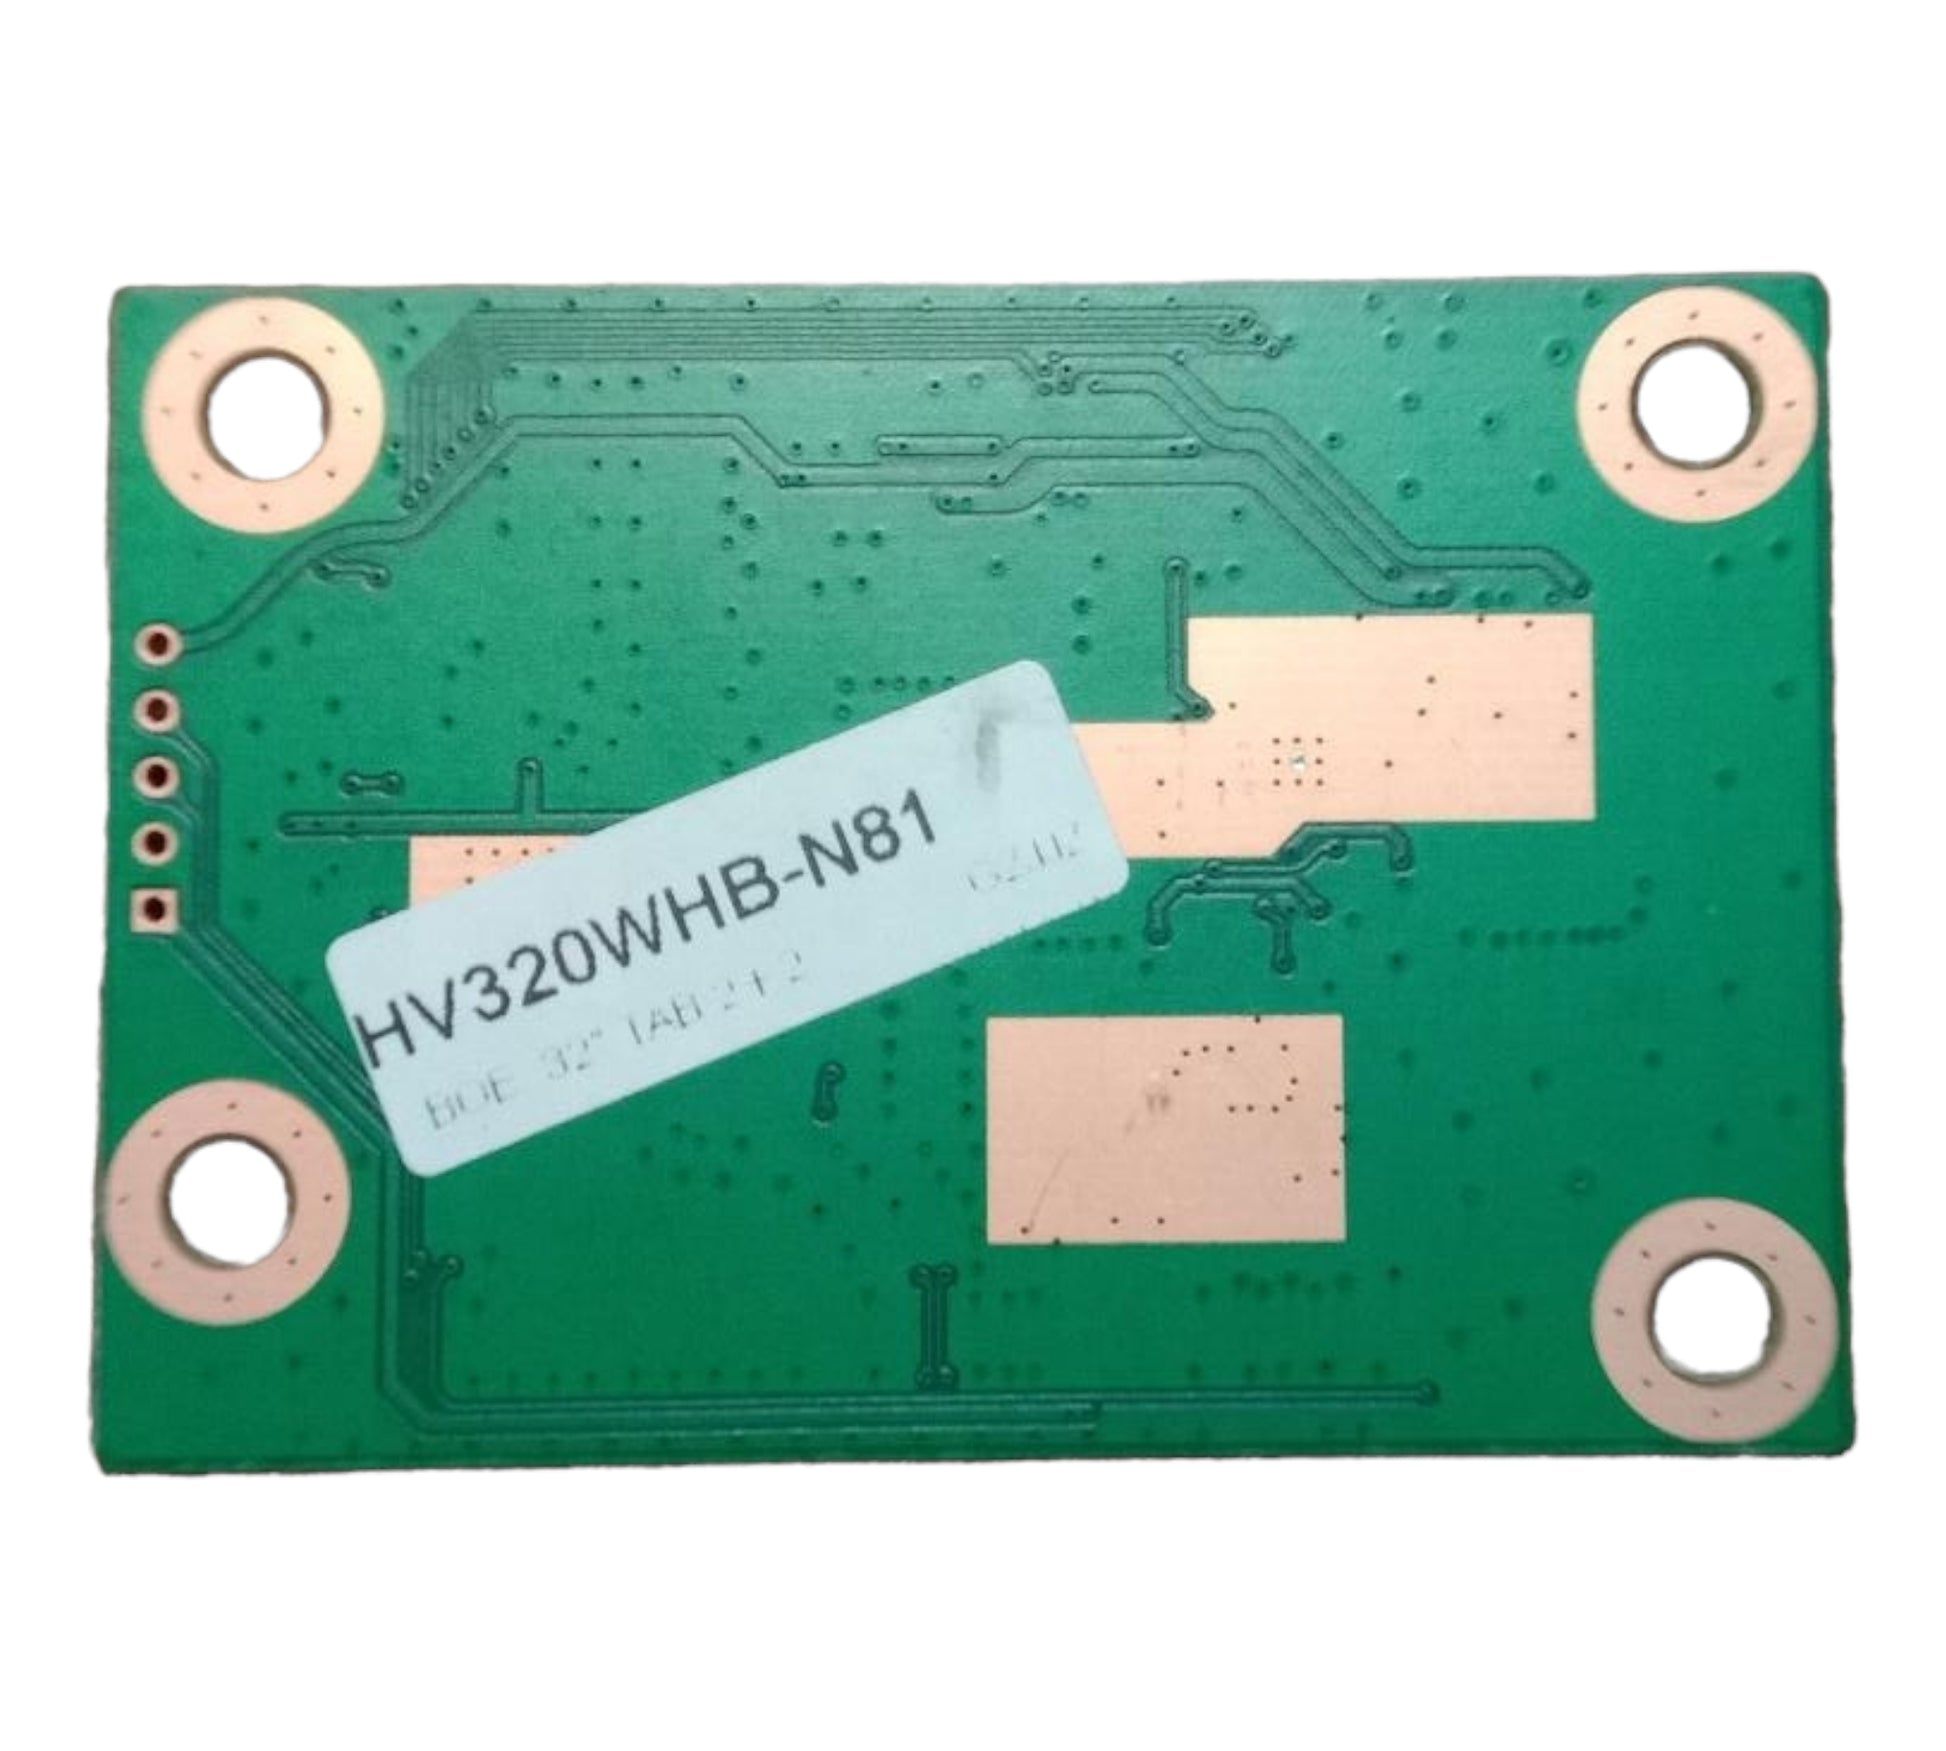 BOE HK HV320WHB /N81 T Con Logic Board - Faritha